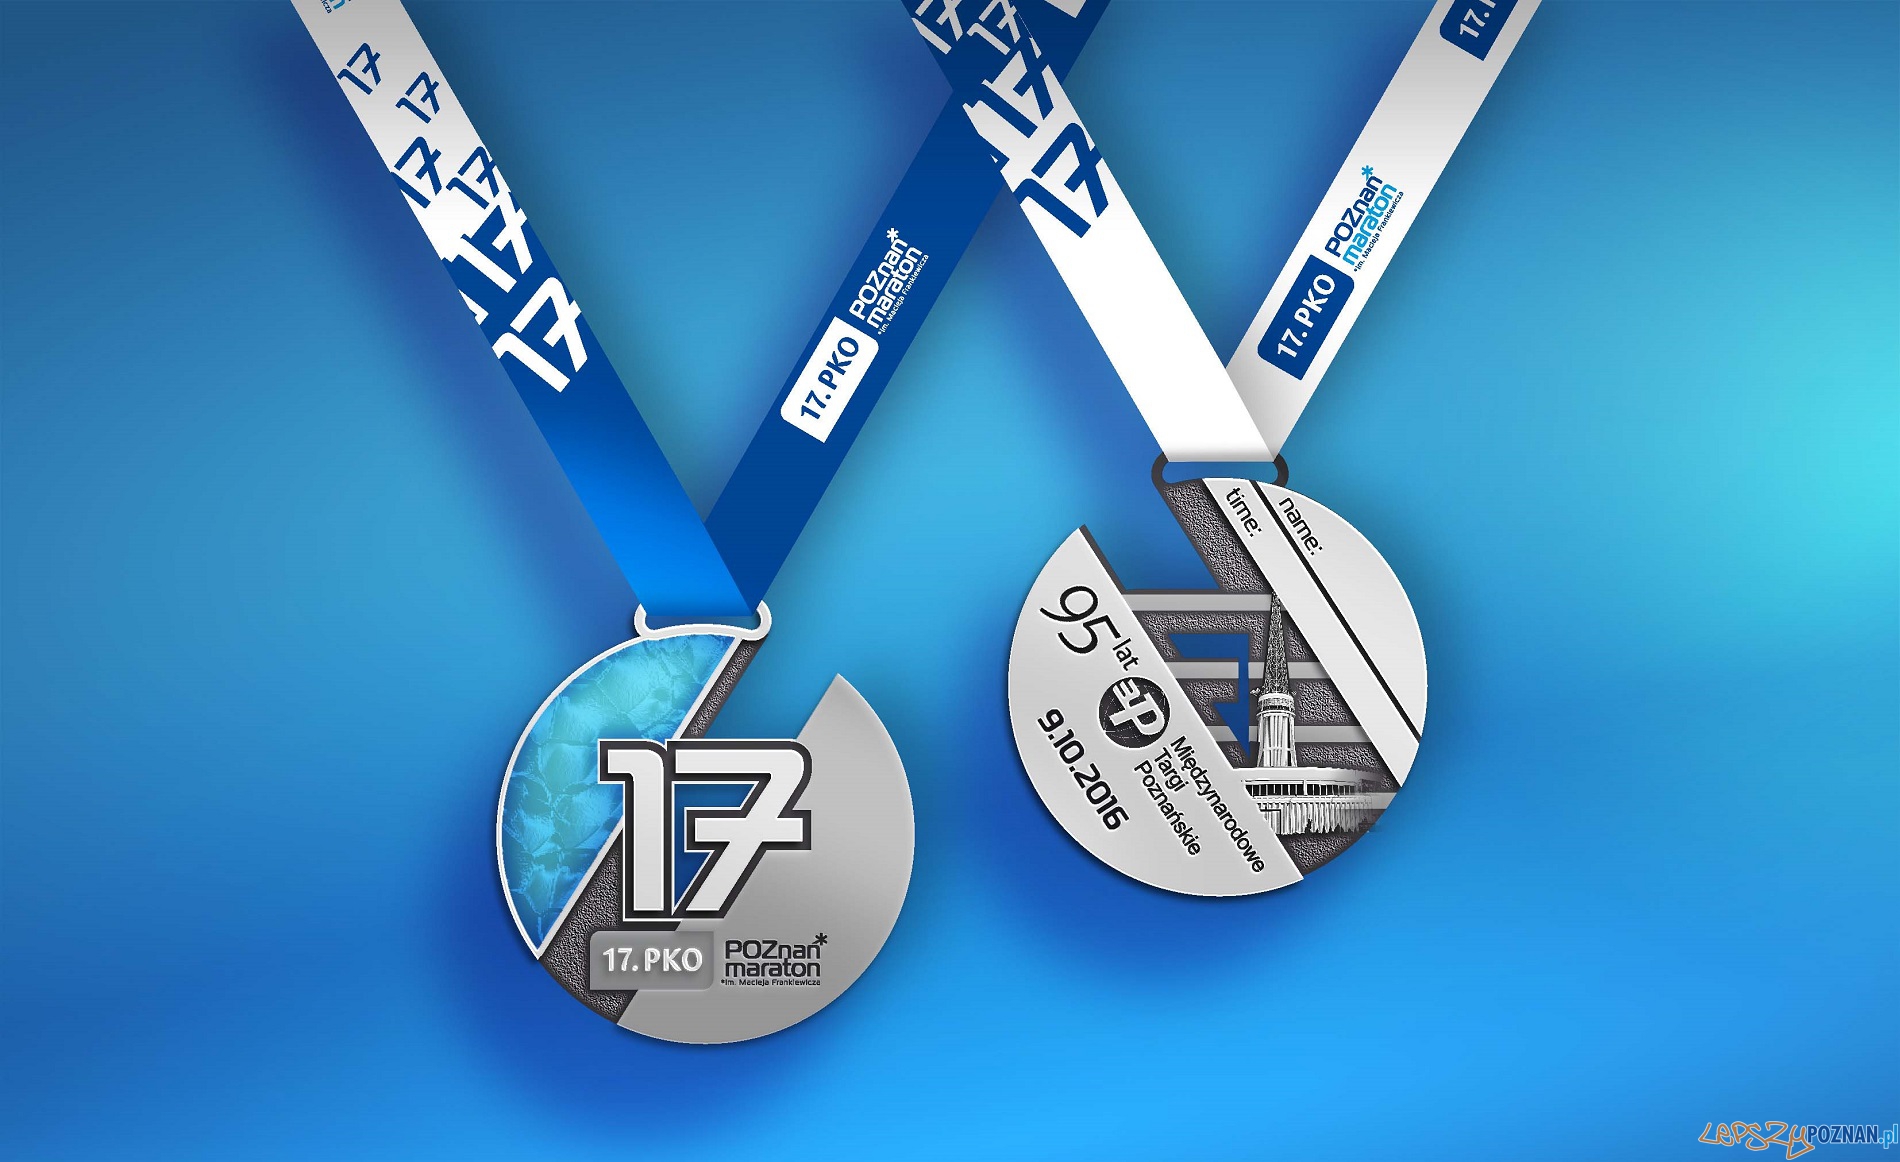 17. PKO Poznań Maraton - medal  Foto: materiały prasowe